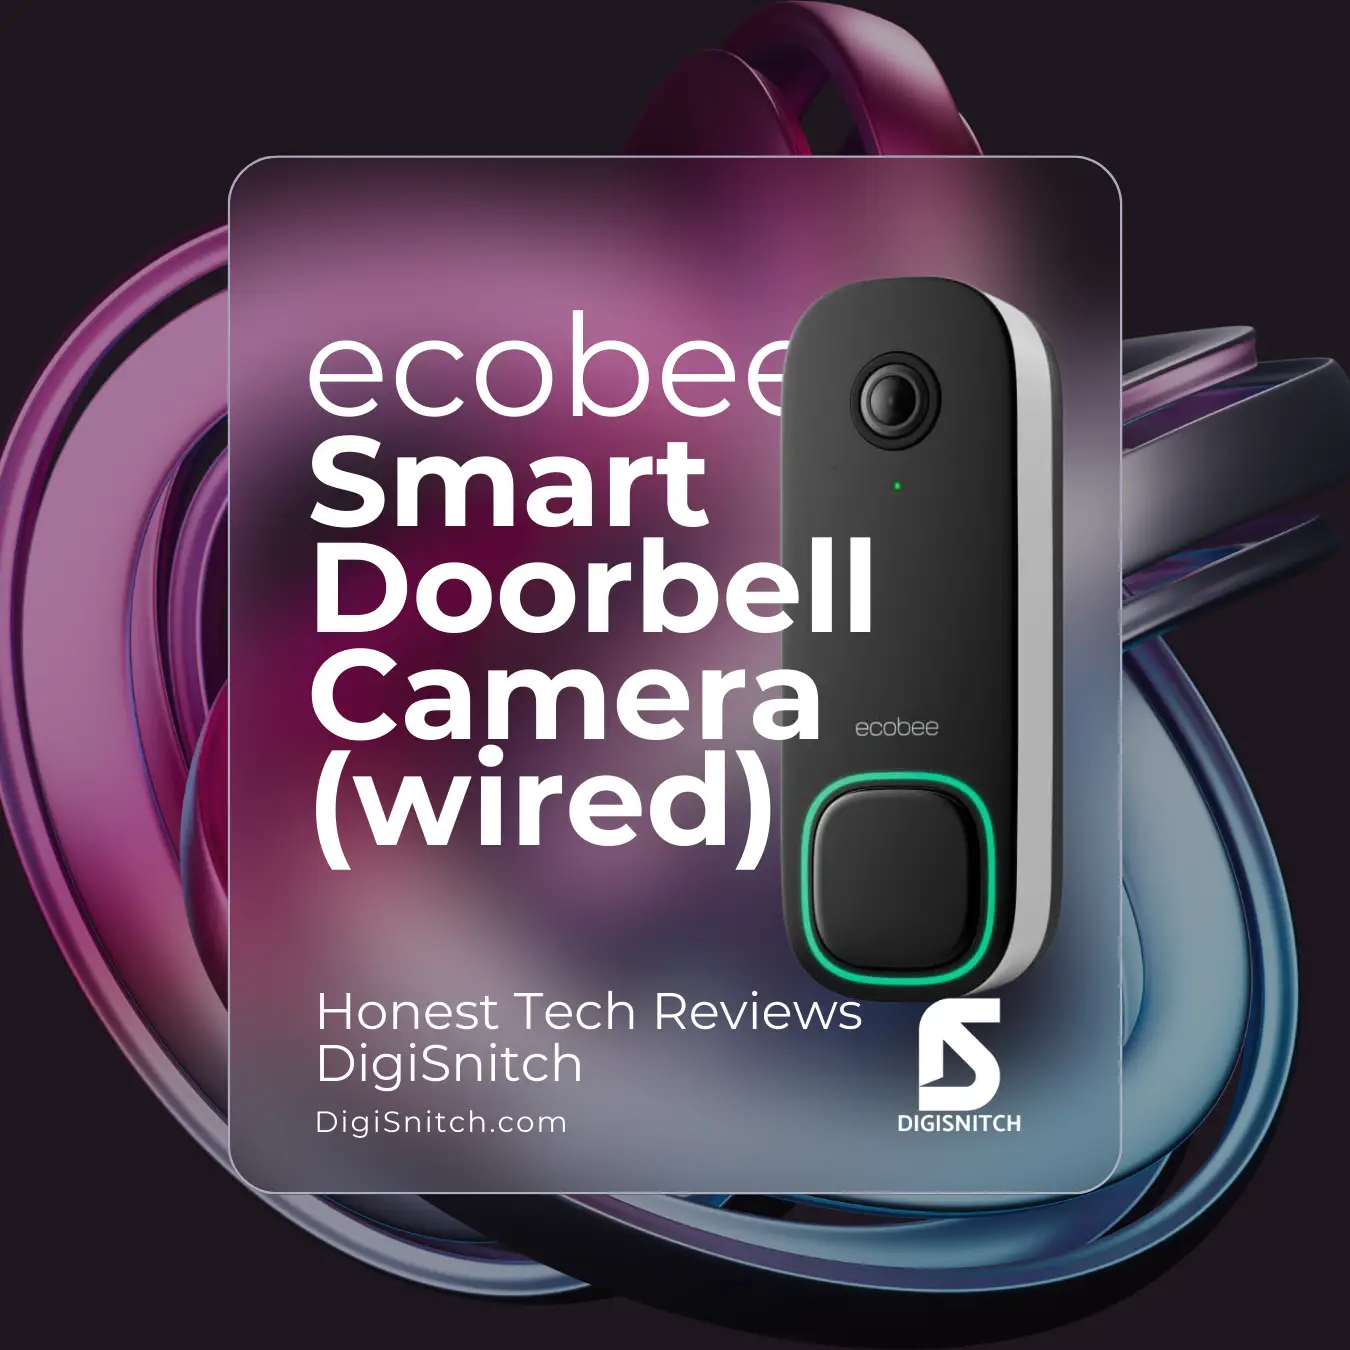 Doorbell Camera Ecobee